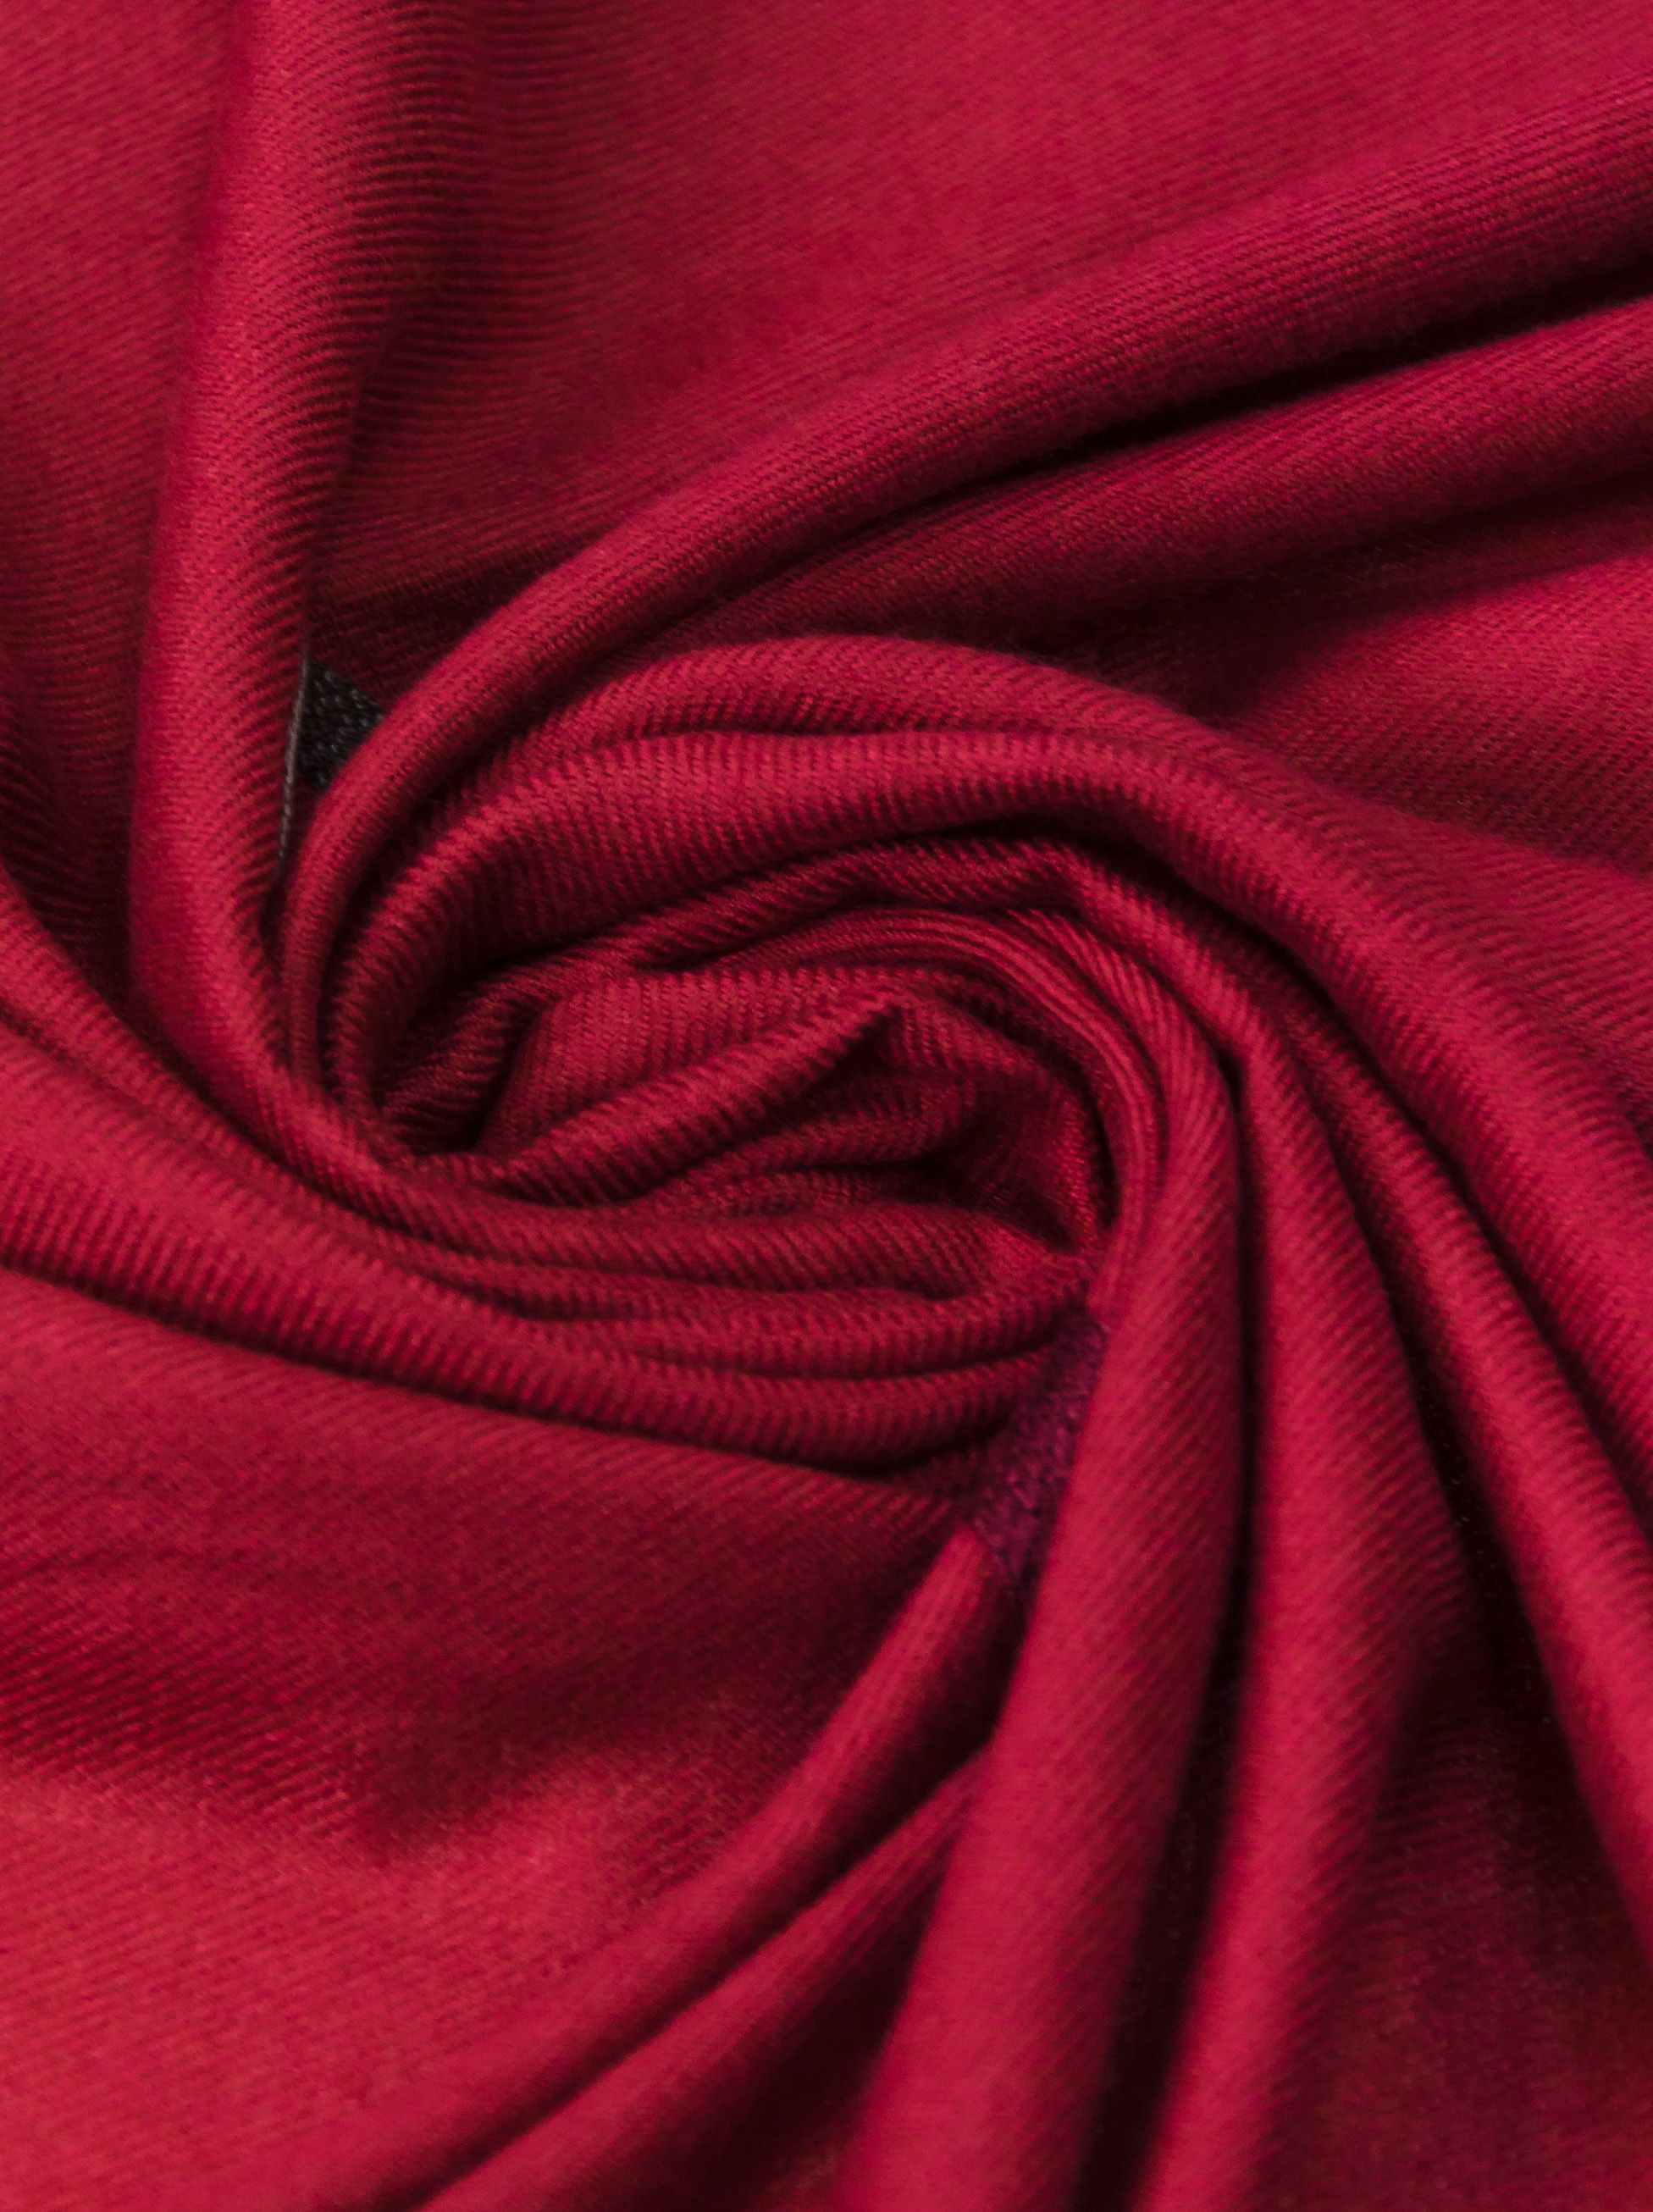 czerwony ciepły szal z motywem haftowanych liter - Allora zdjęcie 3